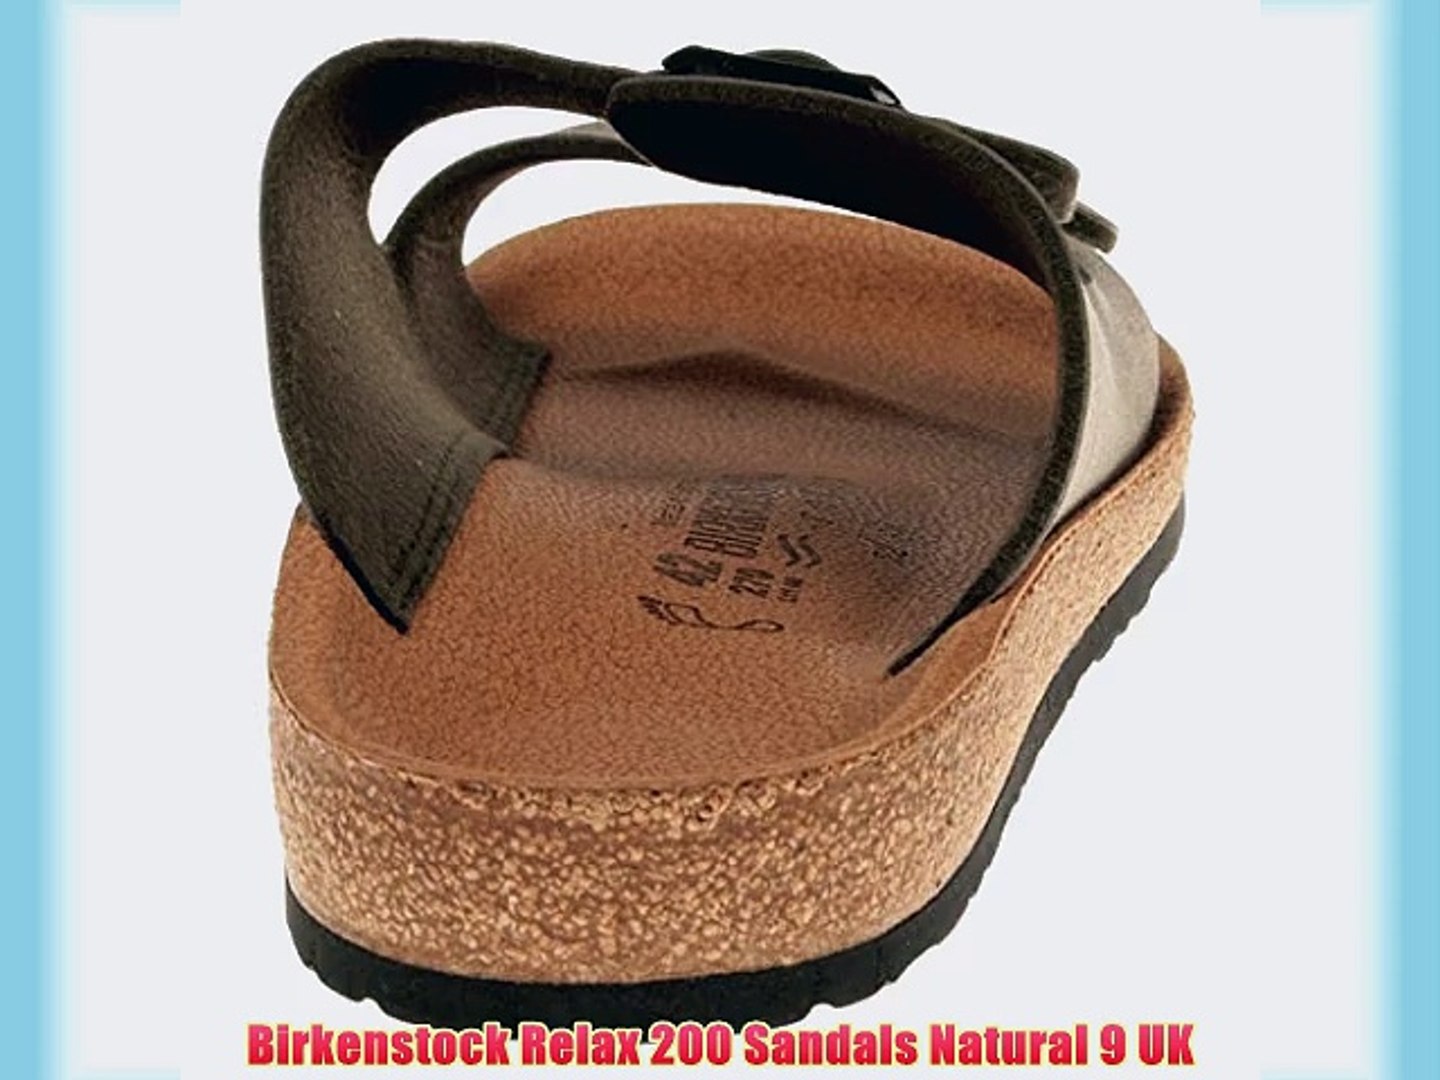 Birkenstock Relax 200 Sandals Natural 9 